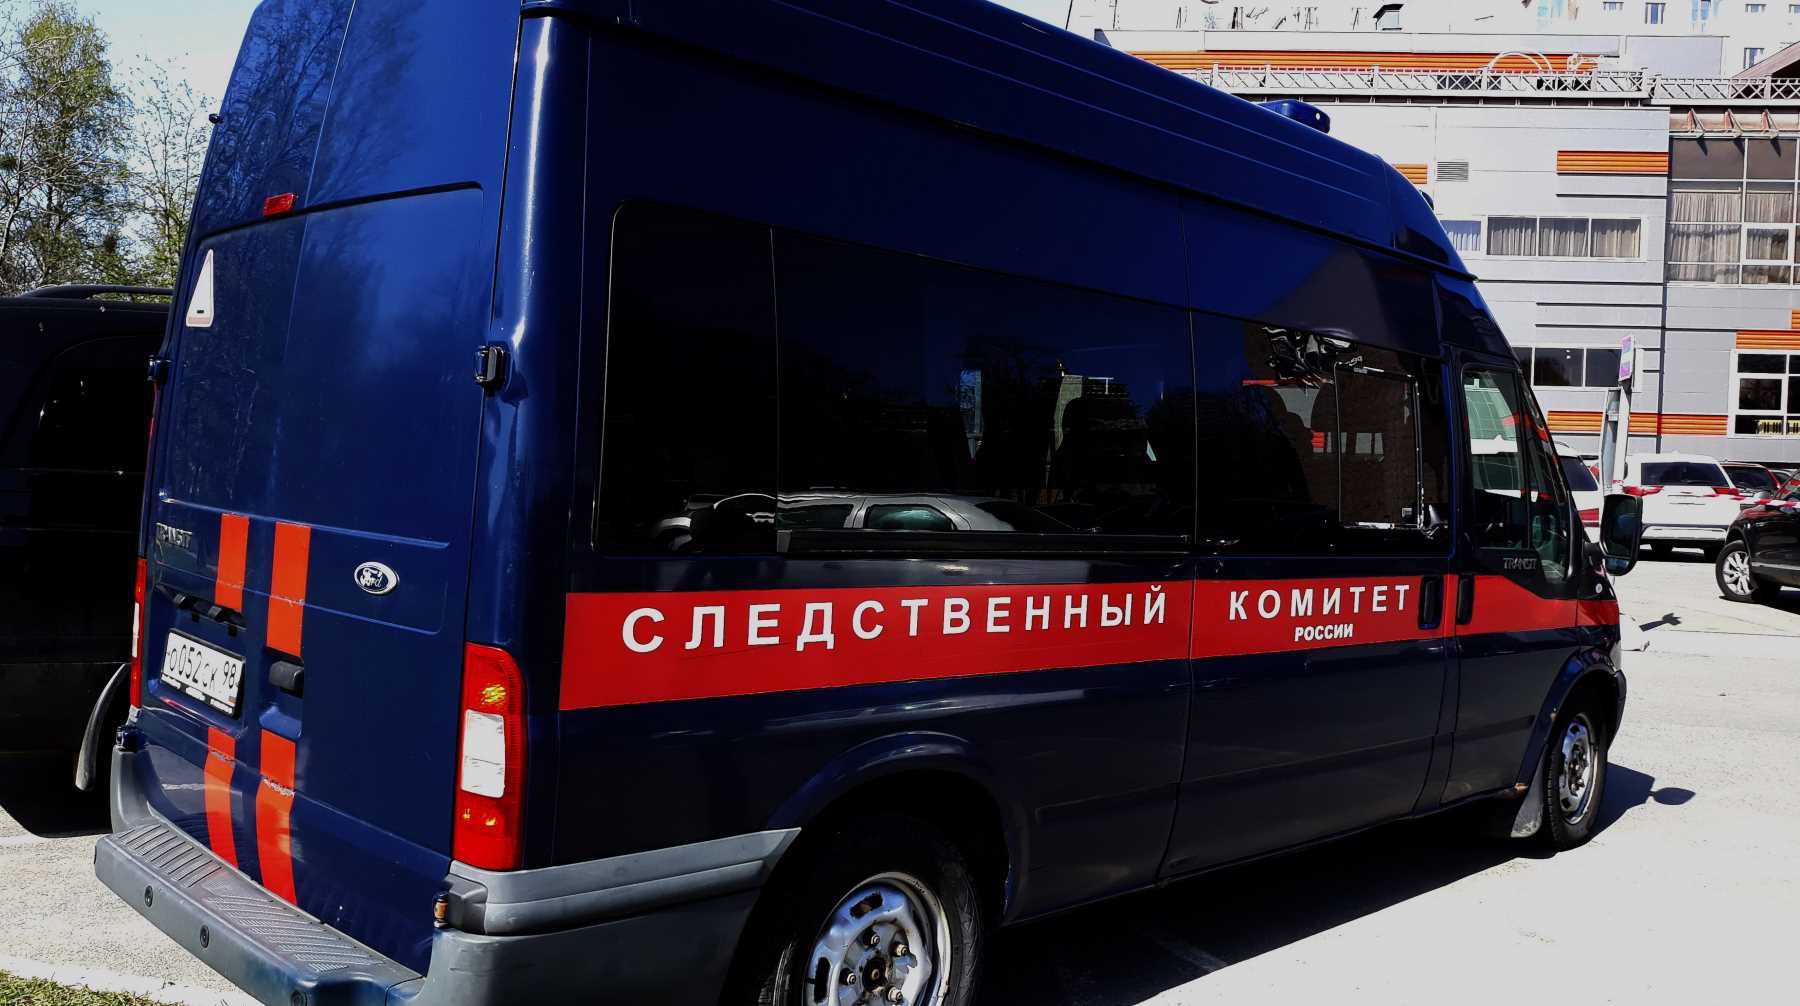 Dailystorm - Замглавы представительства Пензенской области в Москве арестован по делу Белозерцева